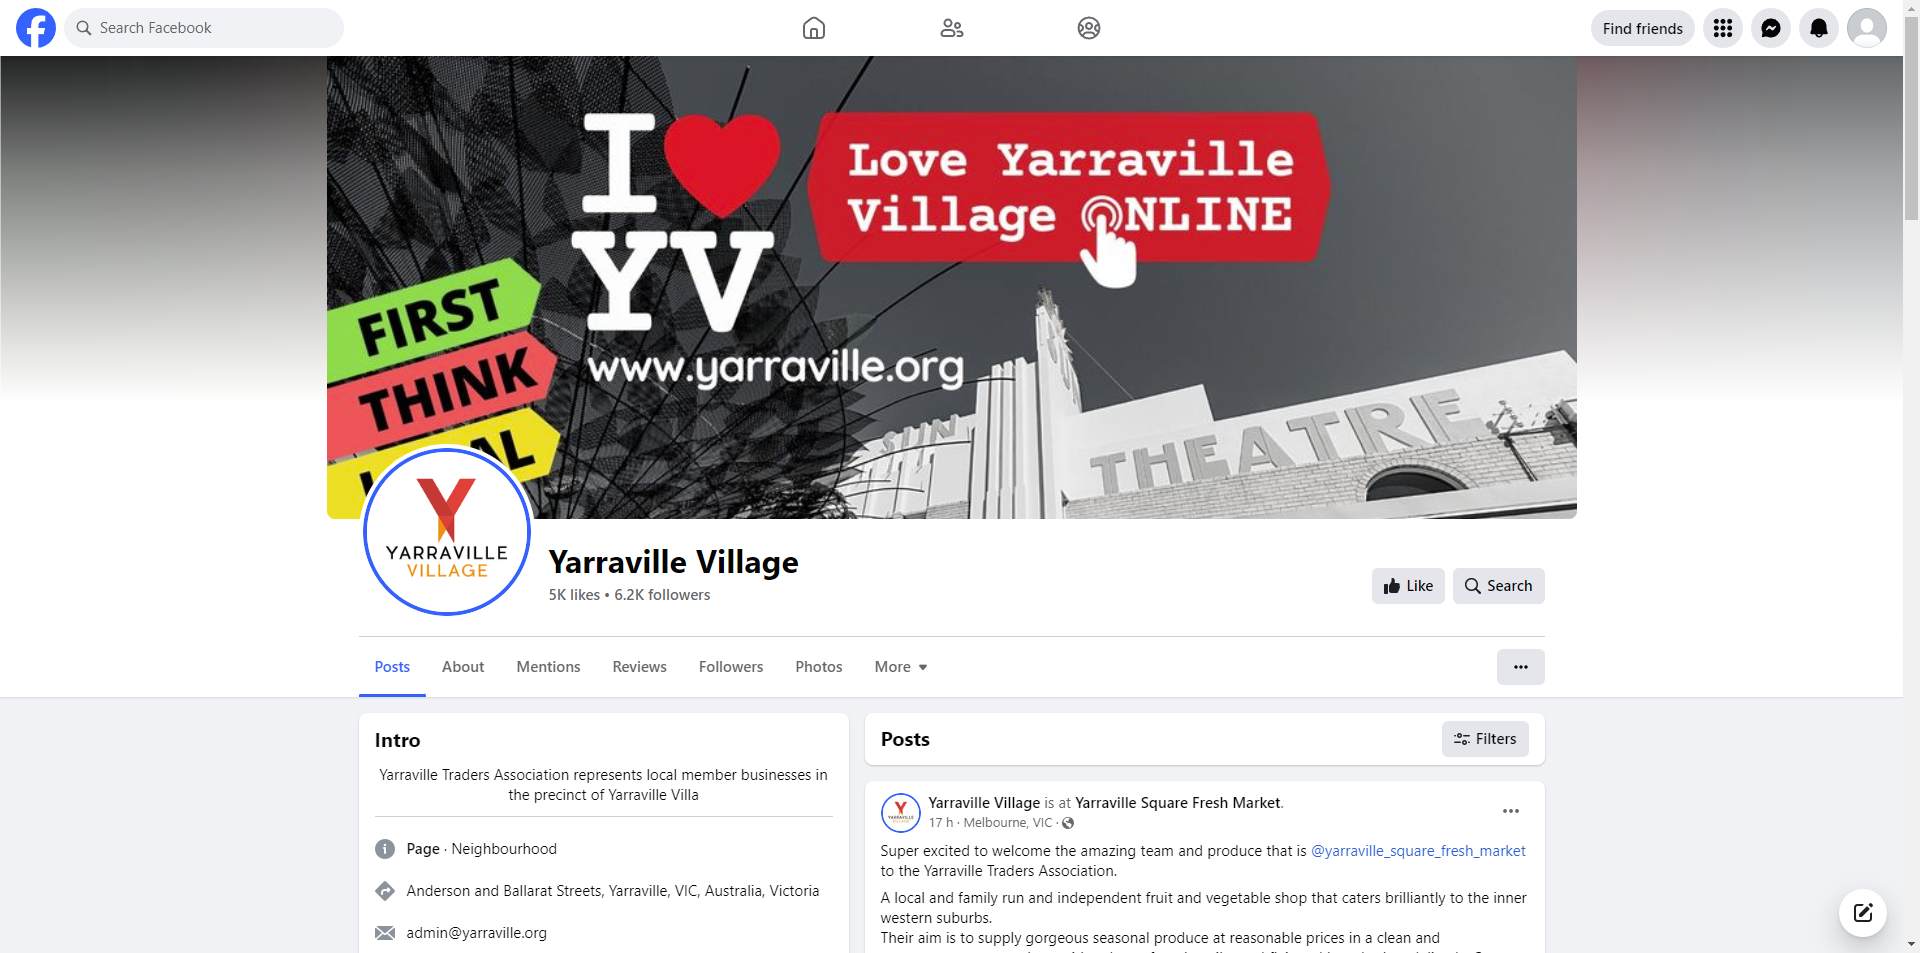 Yarraville Village